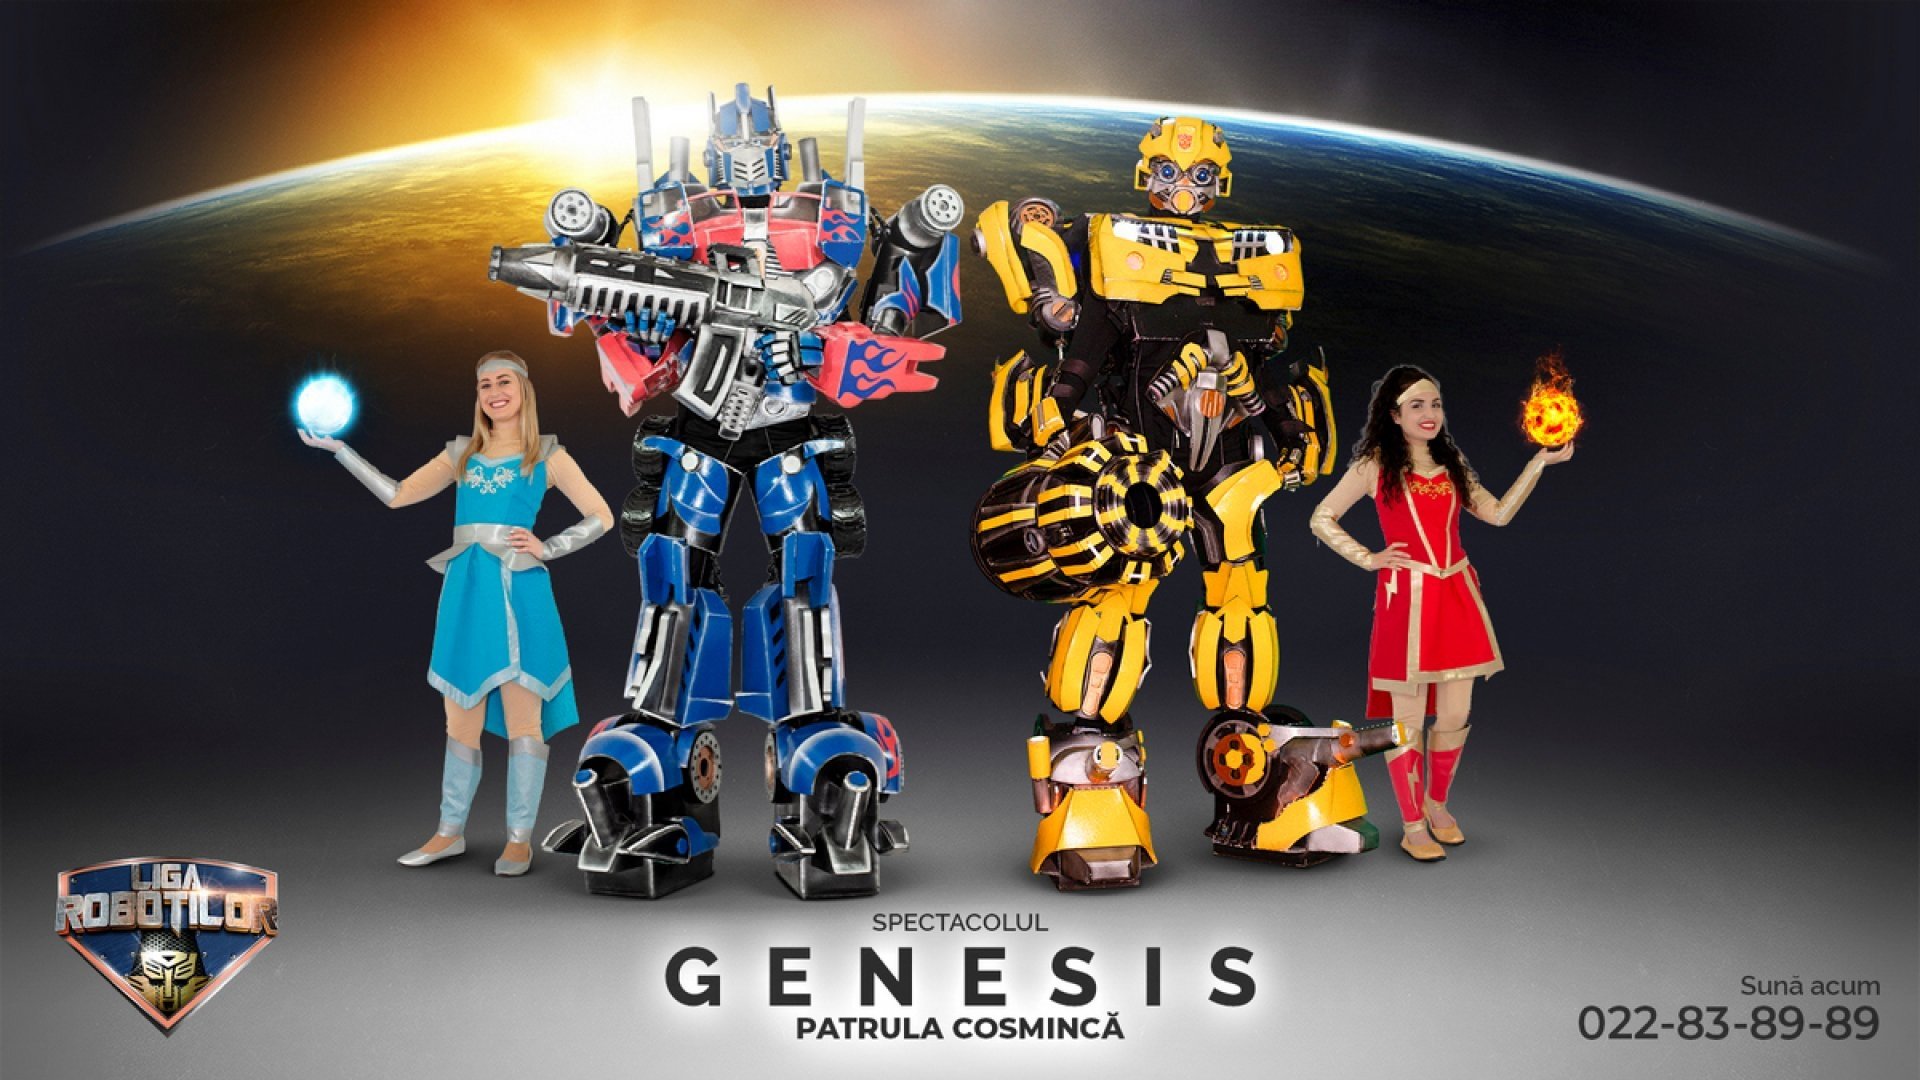 Genesis - Calatorie in Sistemul Solar | Spectacol Interactiv de Animatie pentru copii | Aprilie 2022